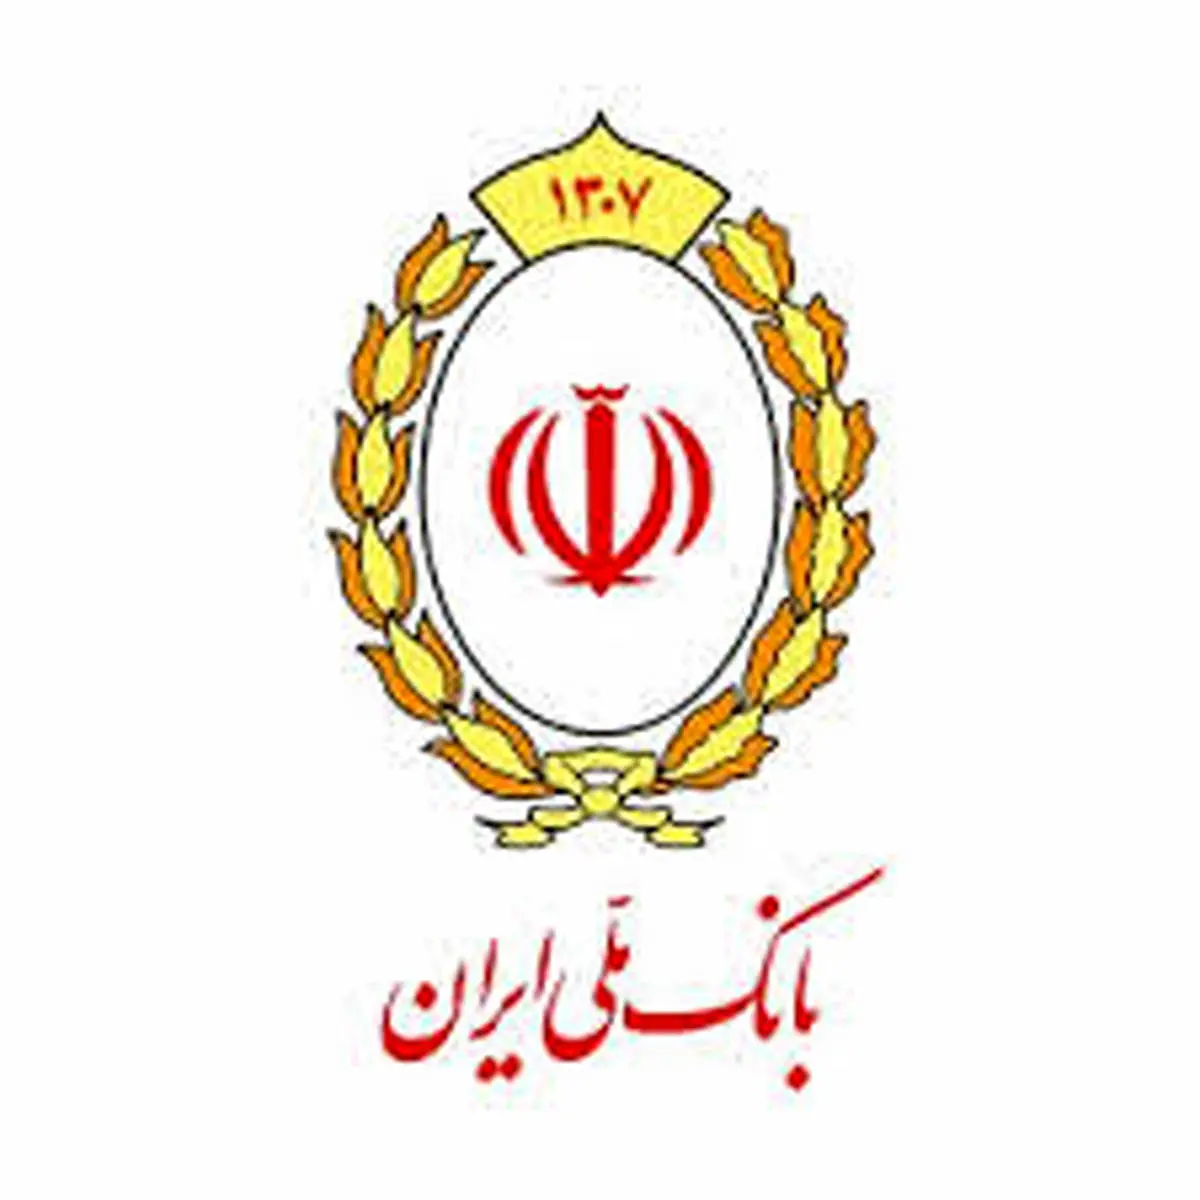  تسهیلات بانک ملی ایران 29 هزار فرصت شغلی ایجادکرد
